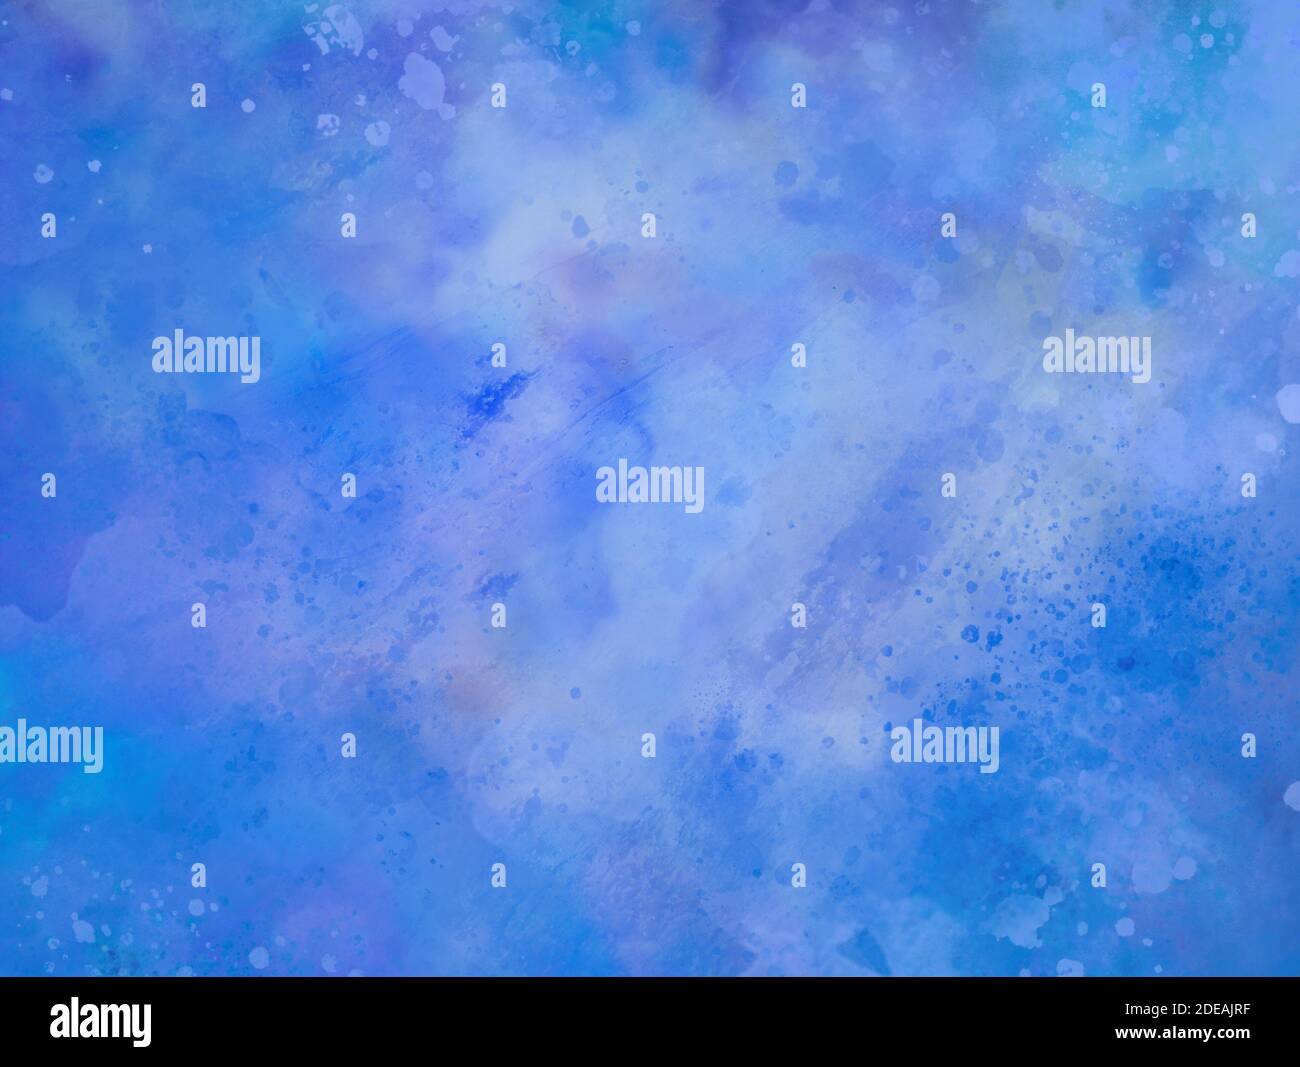 Blaue Aquarell Hintergrund Textur oder lila blau und weiß abstrakt Bemalte Wolken in stürmischen Himmel mit Farbspritzer in alten Vintage strukturierte Grunge de Stockfoto